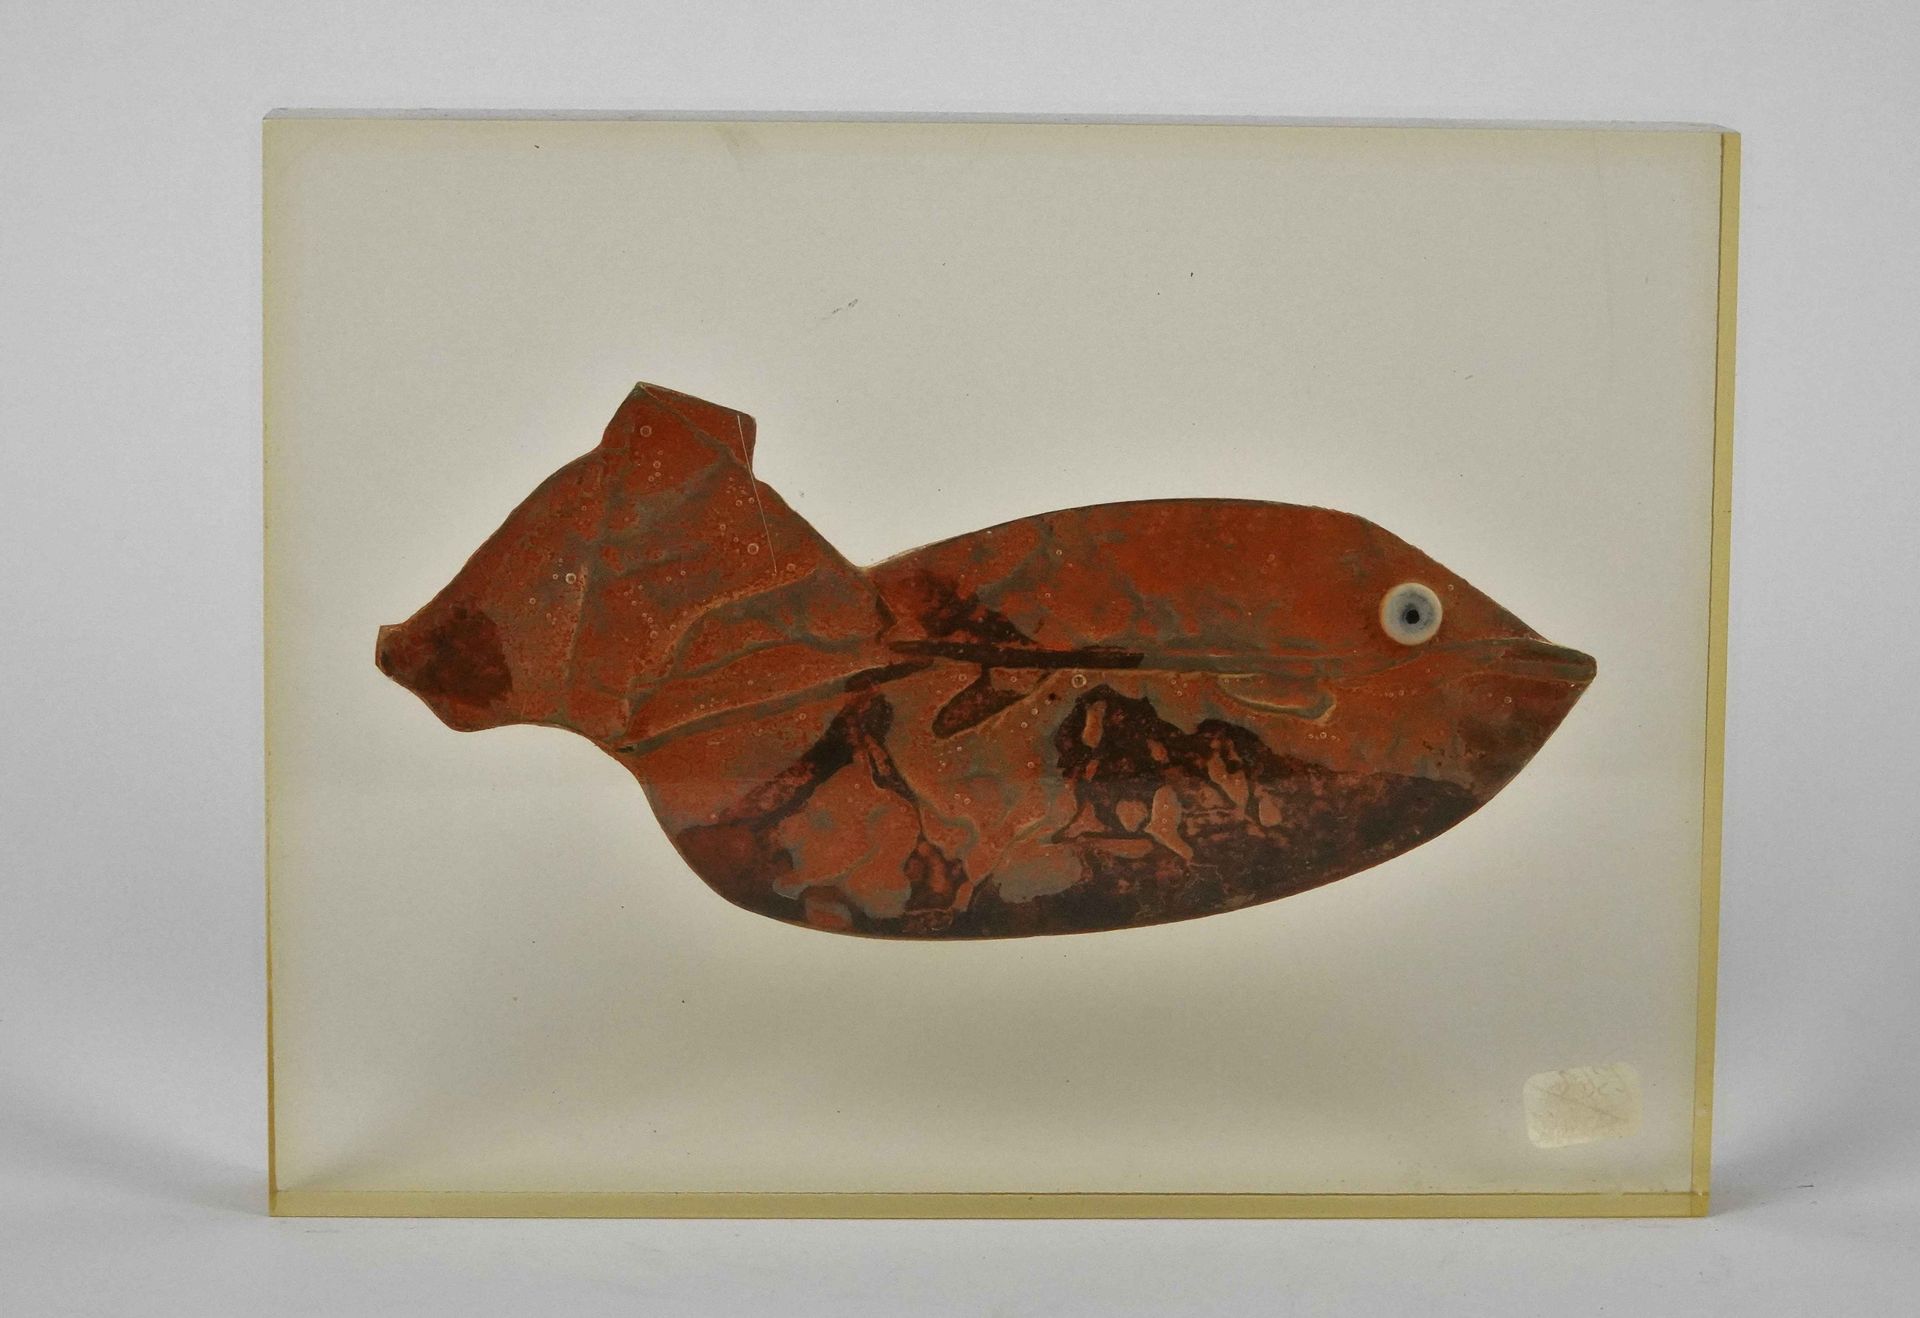 Null Roger Bezombes (1913-1994)

El pez

Escultura de hierro oxidado, firmada en&hellip;